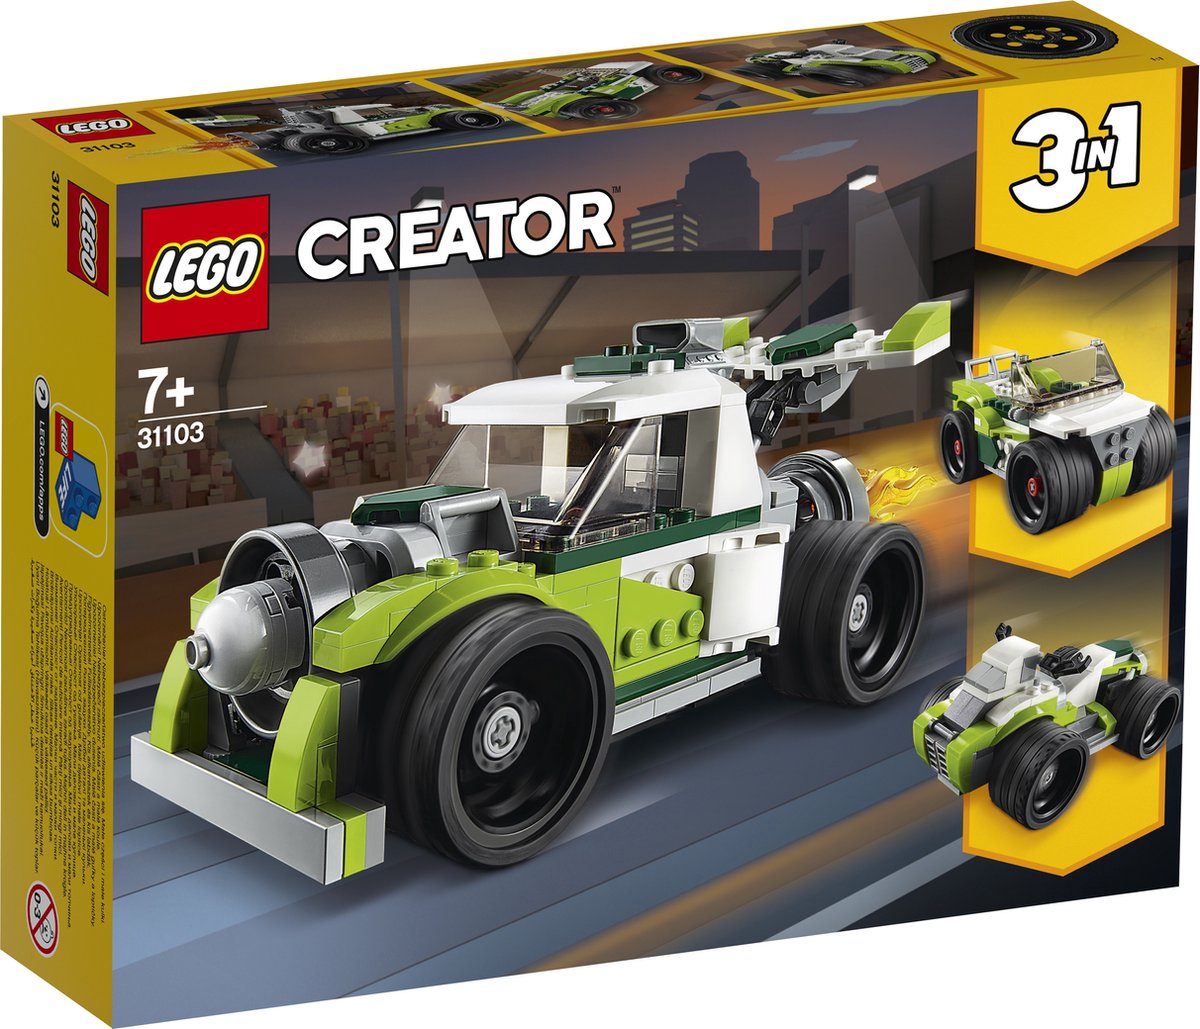 LEGO Creator 31127 Le Bolide de Rue, Jouet à Construire Voiture